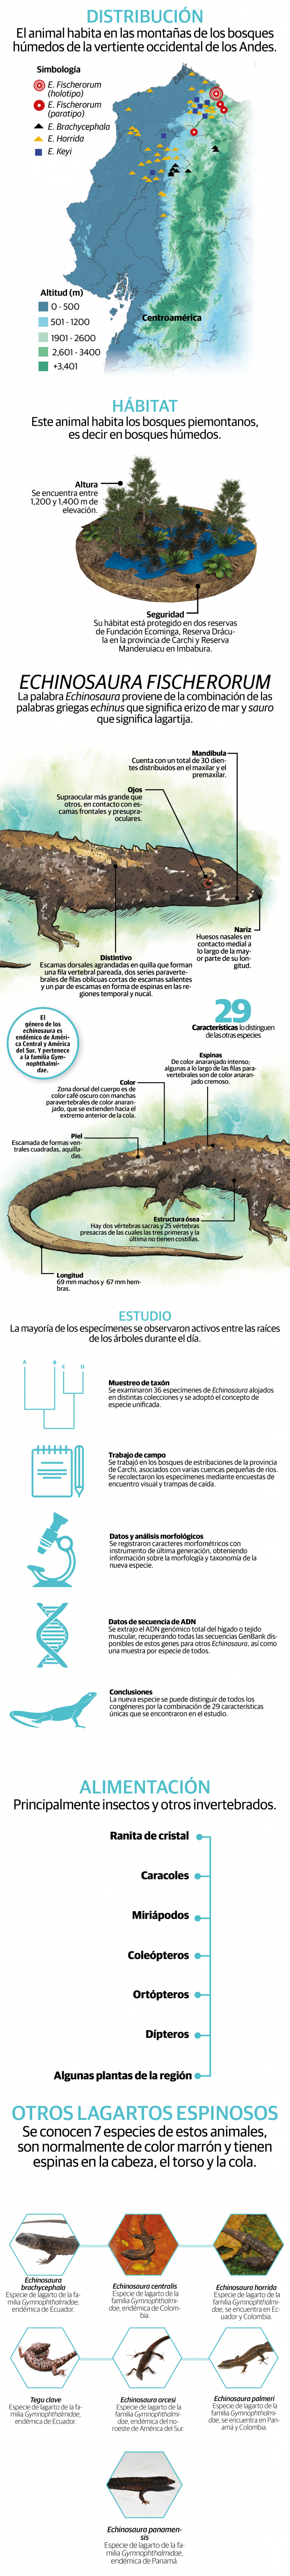 Descubren nueva especie de lagarto espinoso, el reptil vive en los bosques piemontanos